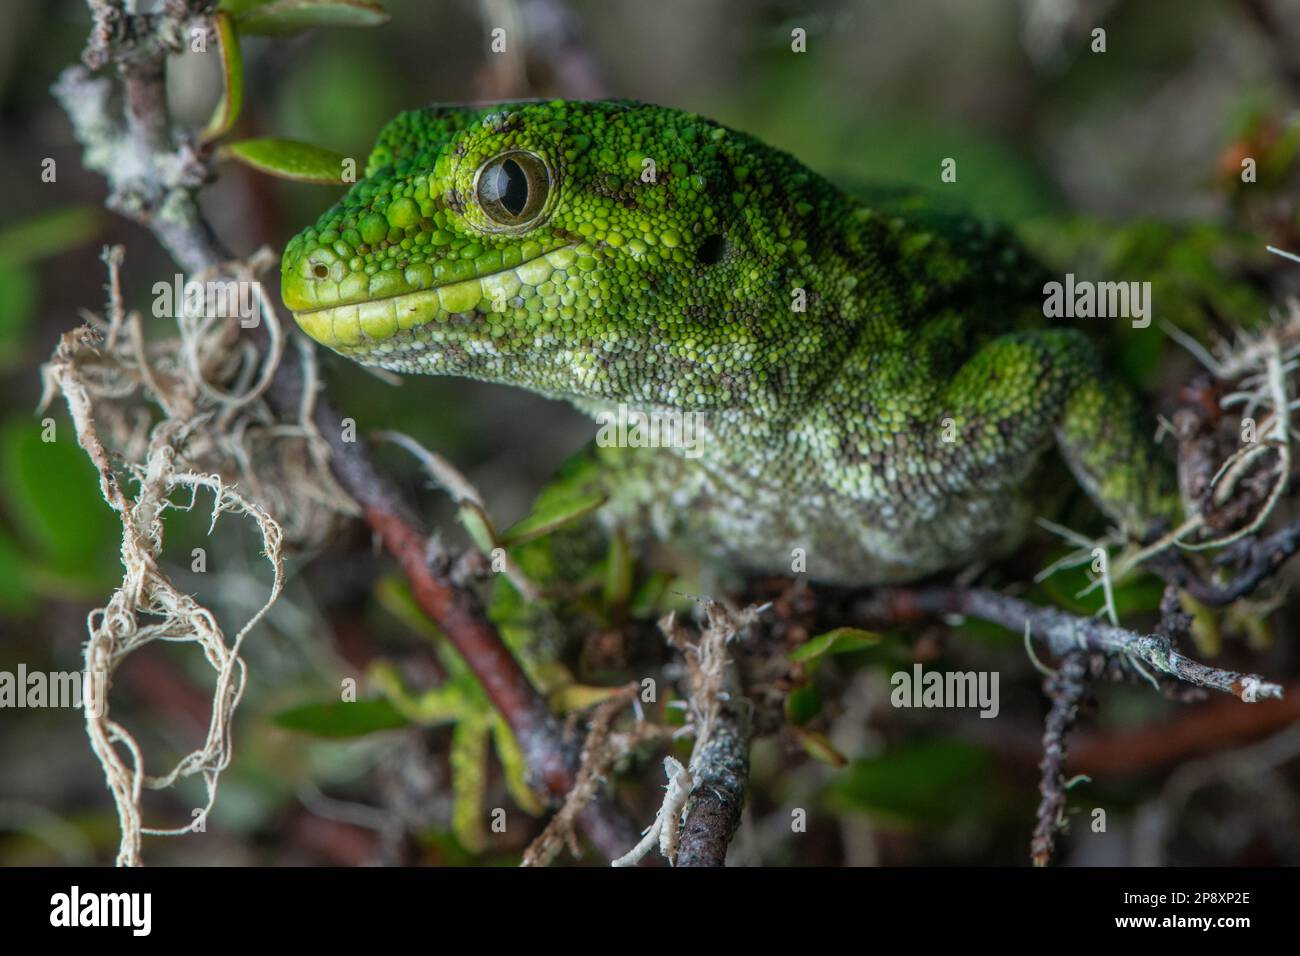 Ein Porträt des vom Aussterben bedrohten rauen Gecko (Naultinus rudis), ein grünes Reptil, das auf der Südinsel in Aotearoa Neuseeland endemisch ist. Stockfoto